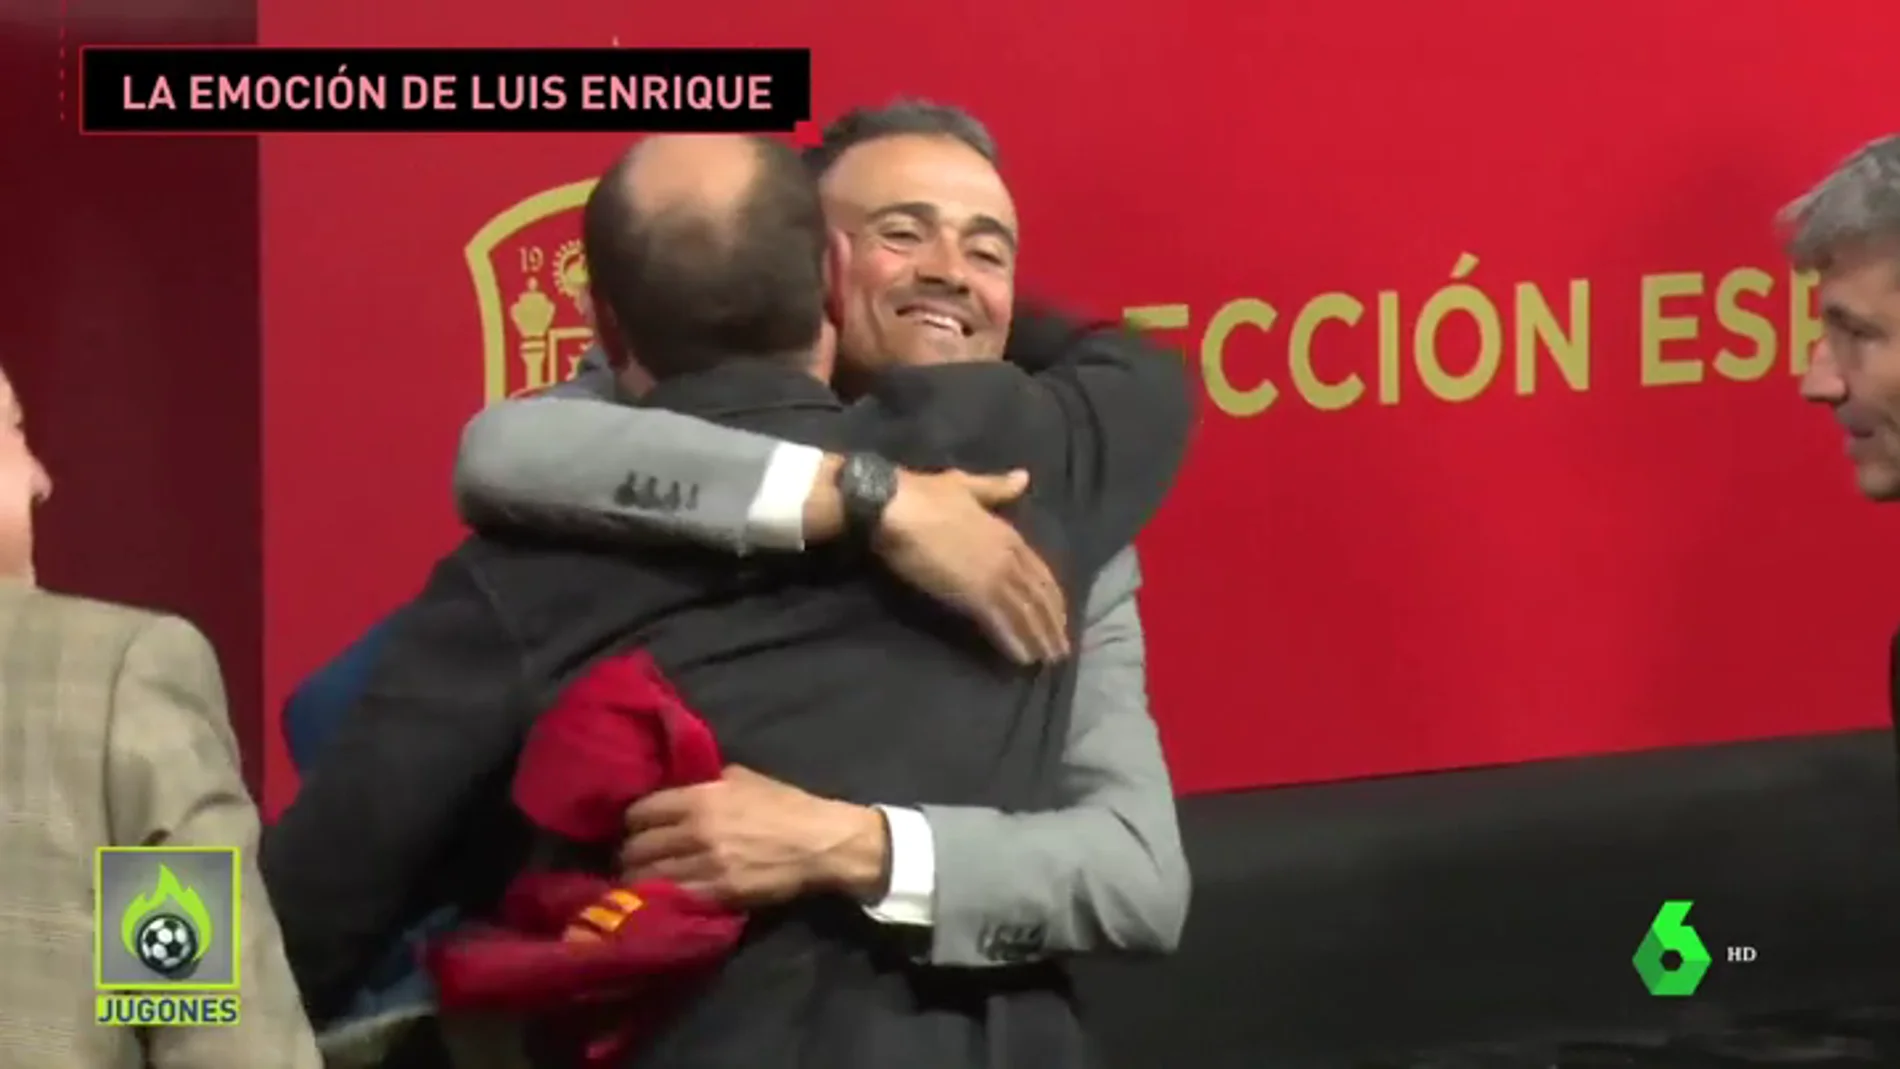 Luis Enrique y su vuelta a la Selección tras su momento más duro: "Quiero demostrar a mi familia que la vida continúa"